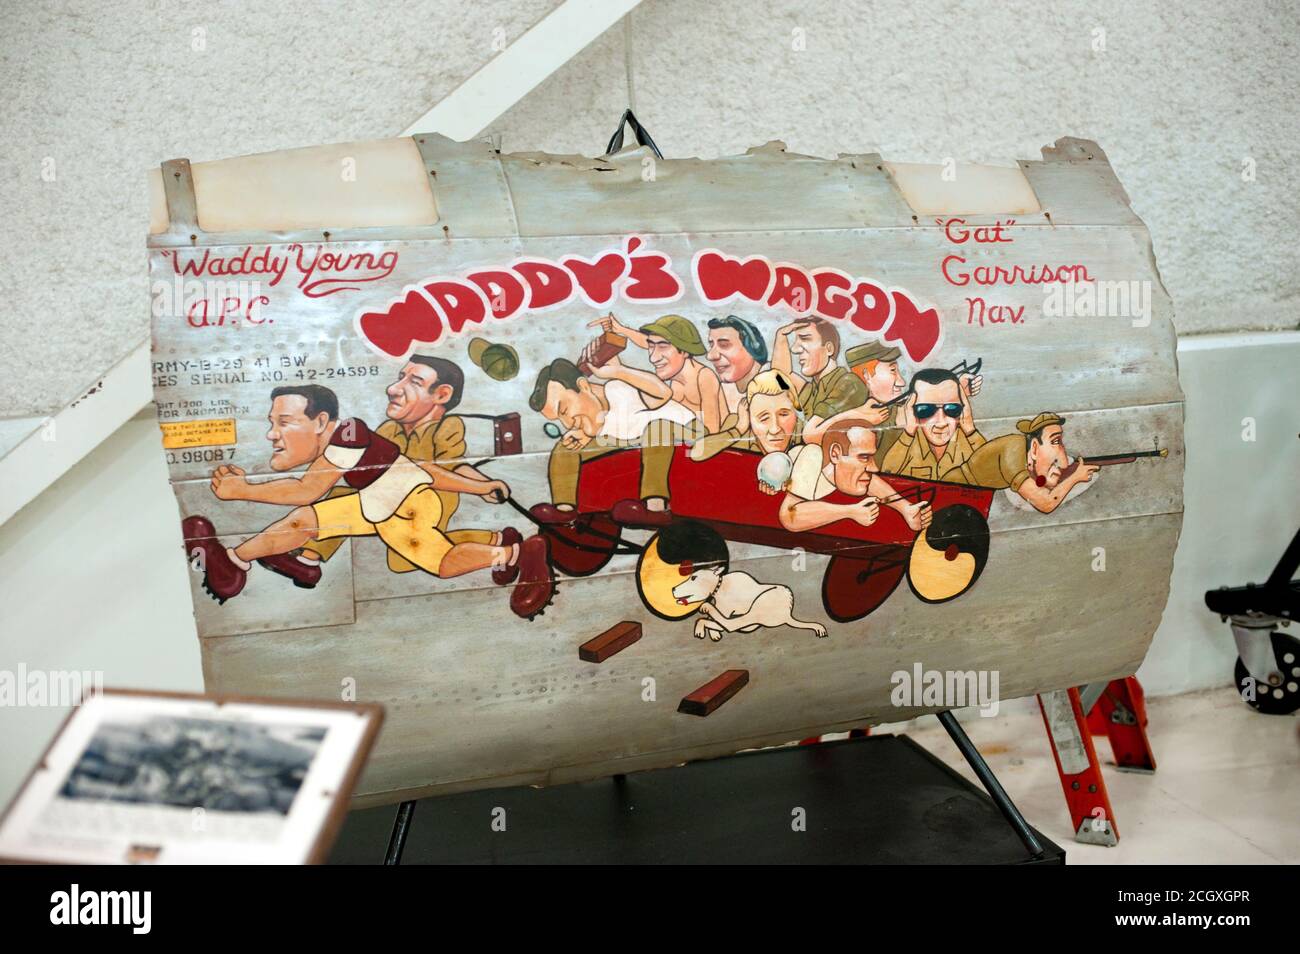 Guerra Mundial II arte de la nariz de Waddy's Wagon, Walter 'Waddy' R joven 869º Escuadrón de bombardeo, Lone Star Flight Museum, en el sitio en Galveston, Texas 2016. Foto de stock